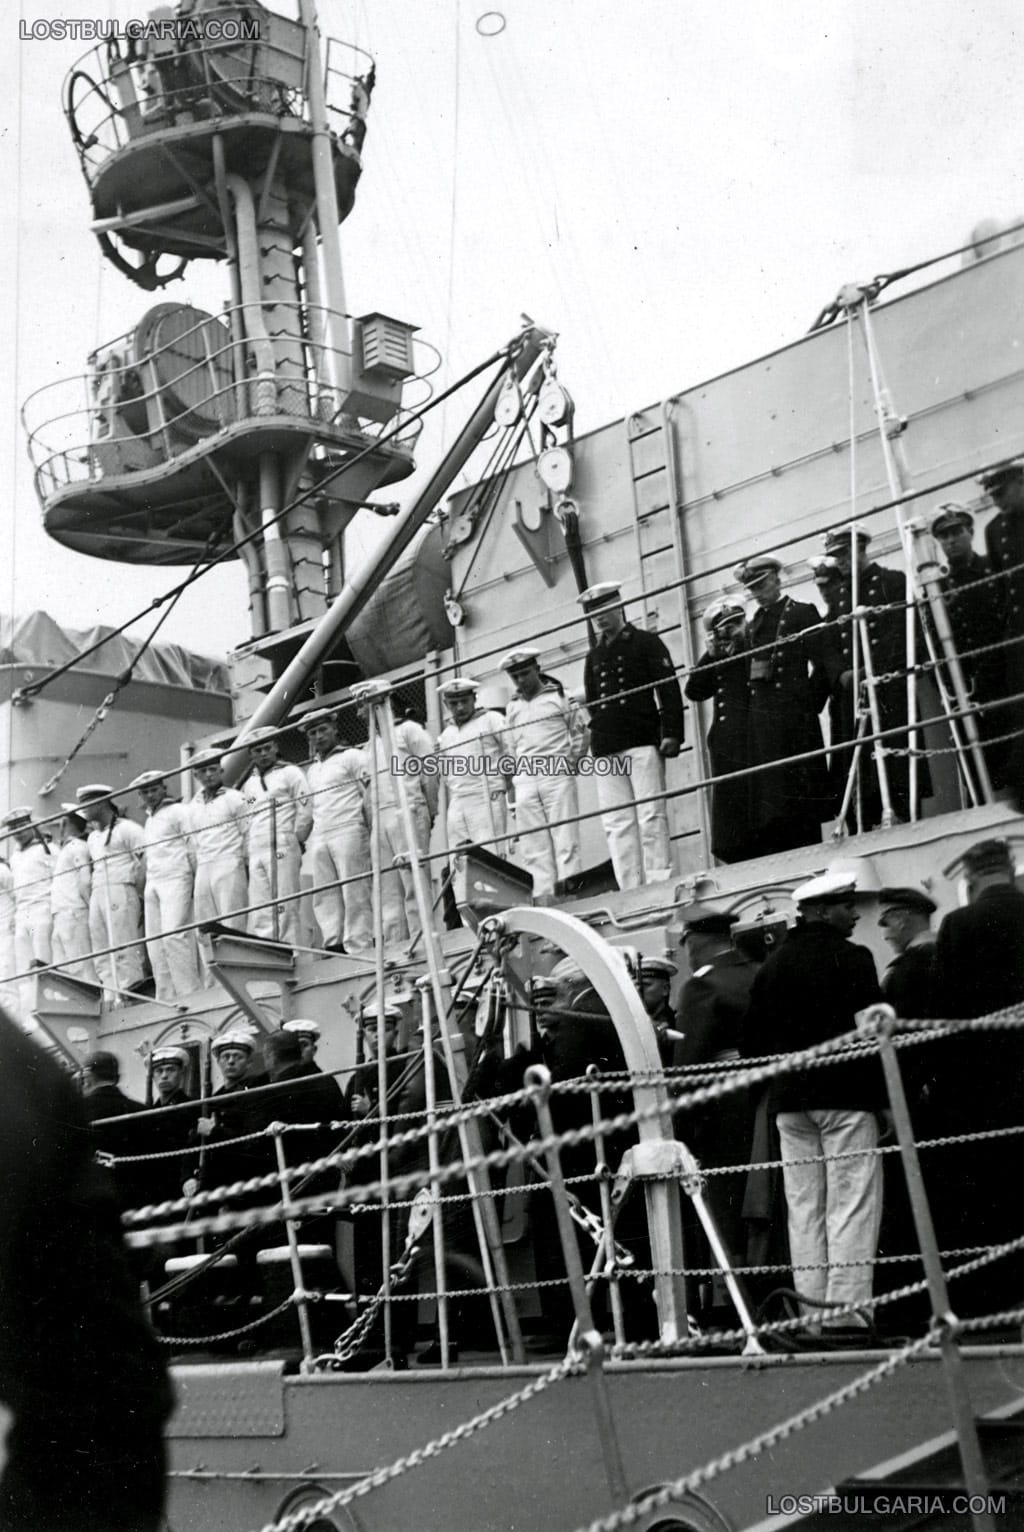 Официално посещение на германския крайцер "Емден" III във Варна, чийто екипаж участва в откриването на паметника на загиналите подводничари от подводница U-46, пристанище Варна, 11-18 ноември 1938 г.